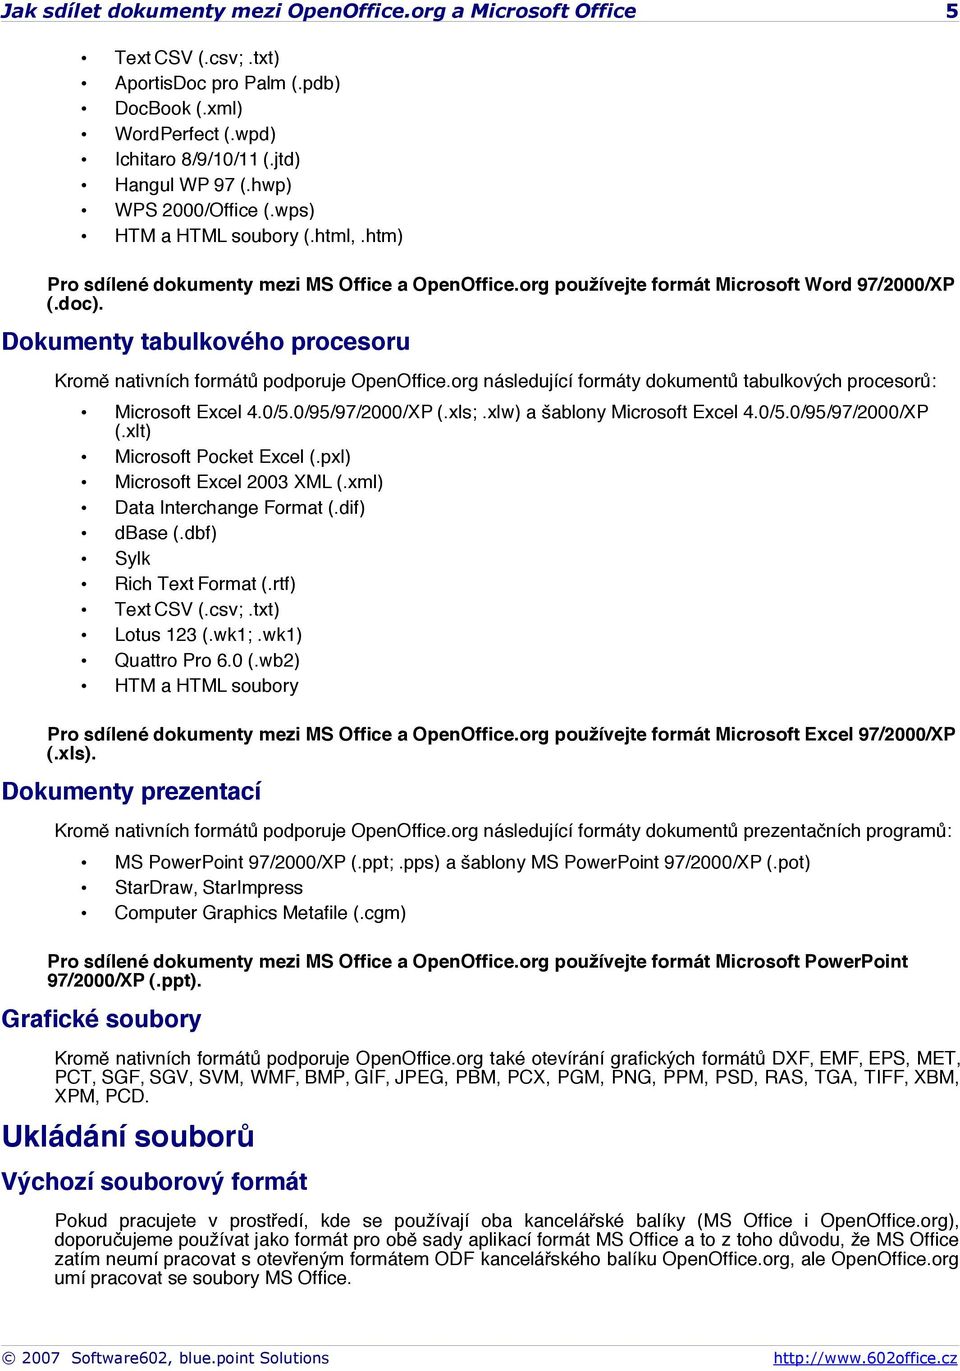 Dokumenty tabulkového procesoru Kromě nativních formátů podporuje OpenOffice.org následující formáty dokumentů tabulkových procesorů: Microsoft Excel 4.0/5.0/95/97/2000/XP (.xls;.